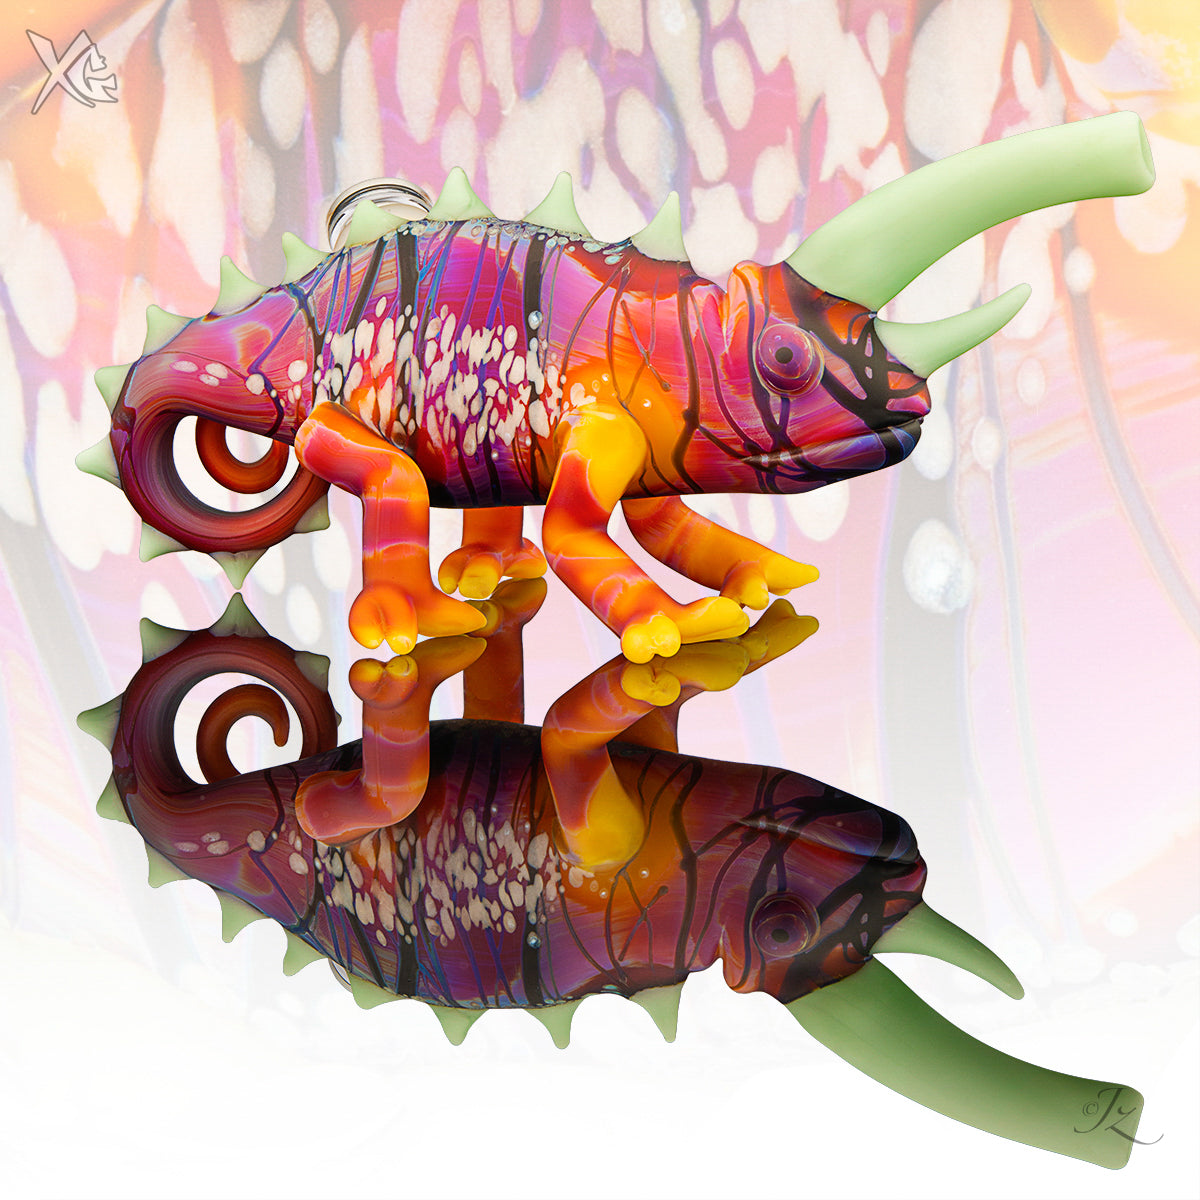 Standing Chameleon - Hardman Glass Art